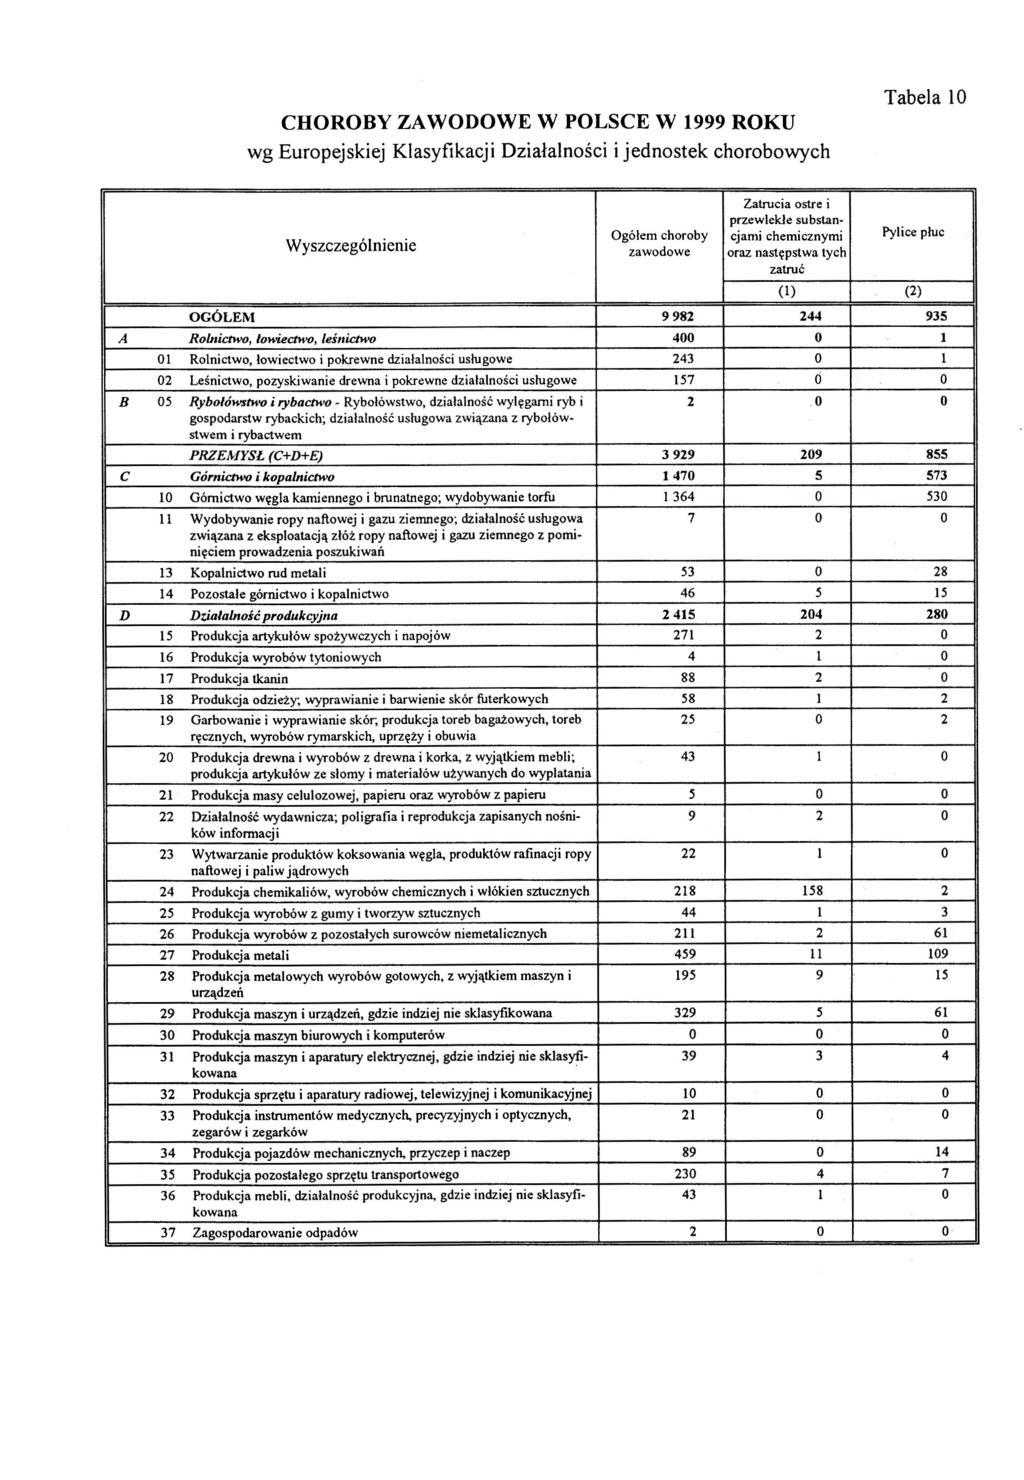 CHOROBY ZAWODOWE W POLSCE W 1999 ROKU wg Europejskiej Klasyfikacji Działalności i jednostek chorobowych Tabela 10 Wyszczególnienie Zatrucia ostre i przewlekle su bstan Ogółem choroby cjami